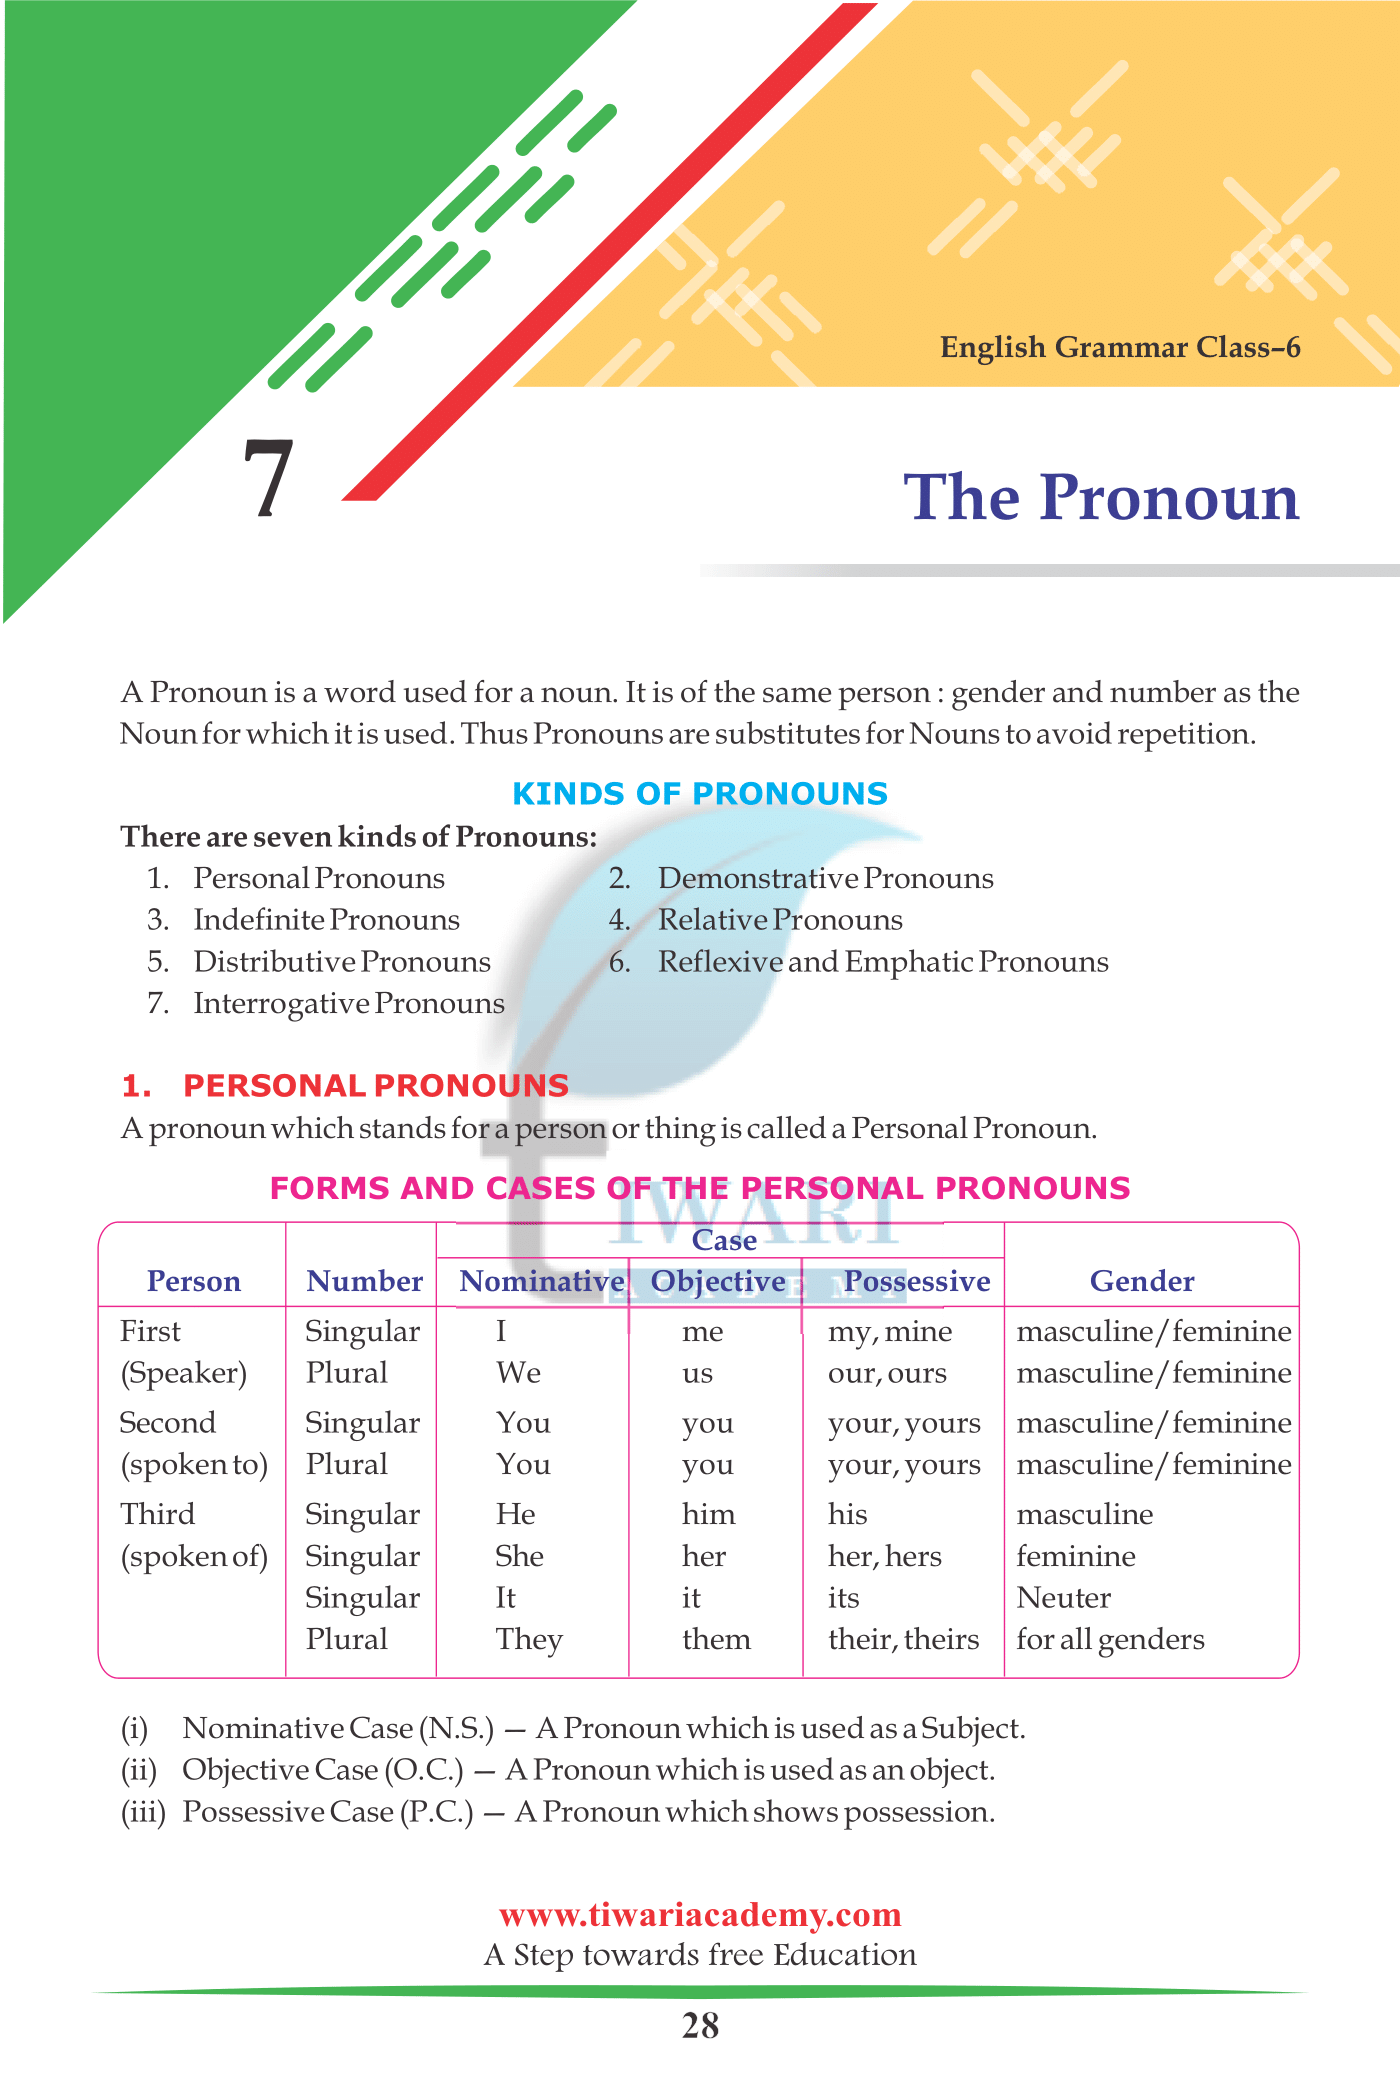 Class 6 English Grammar Chapter 7: A Pronoun